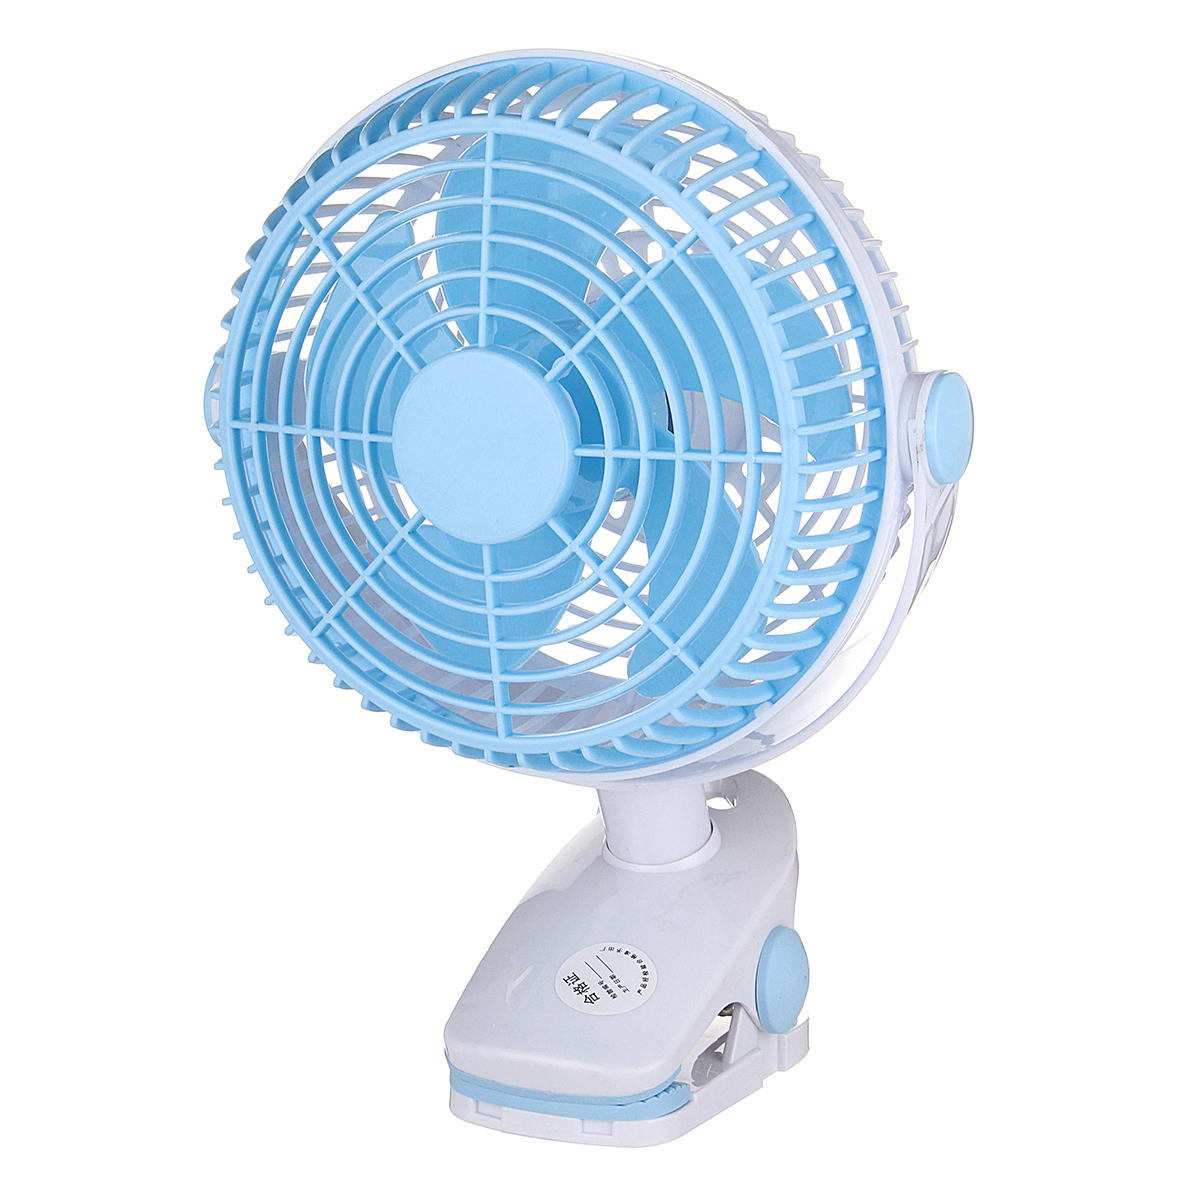 Portable cooling fan clip on fan usb 